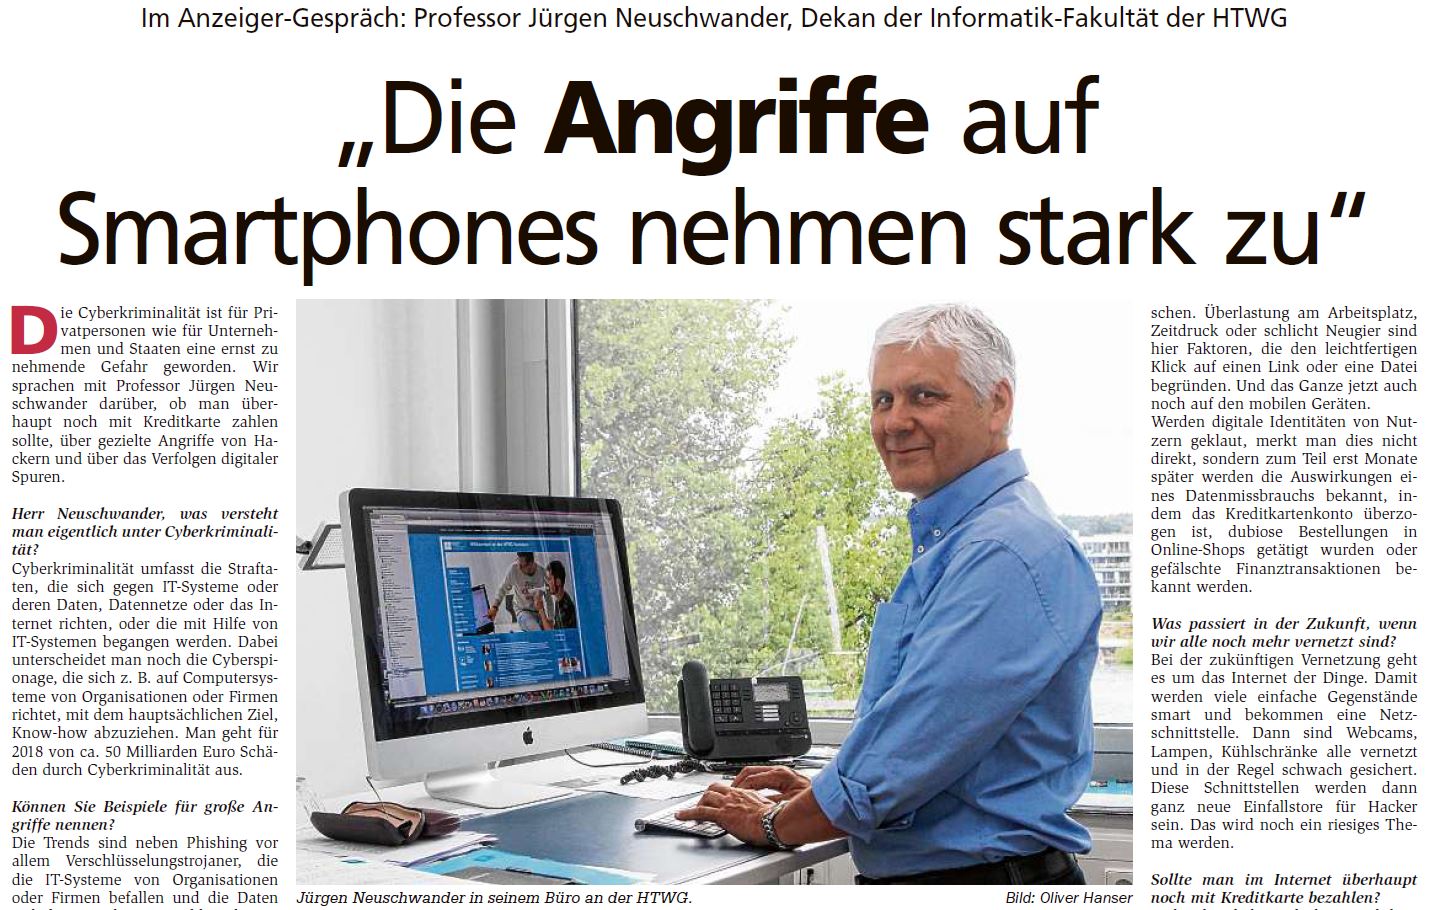 Prof. Dr. Jürgen Neuschwander im Interview: Angriffe von Smartphones